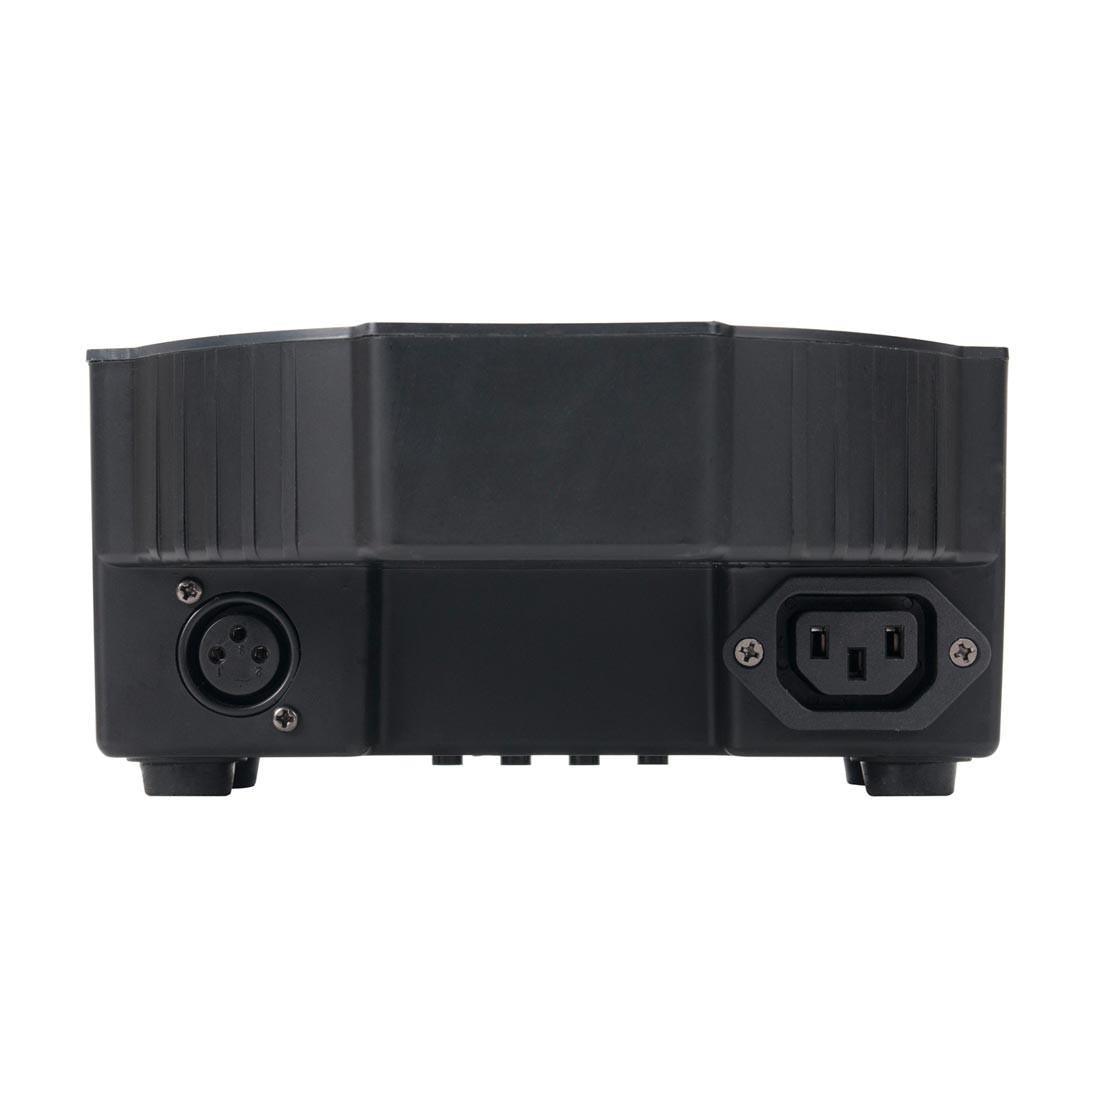 4 x ADJ Mega TRIPAR Profile Plus par Cans with DMX Controller & Cables Bundle - DY Pro Audio